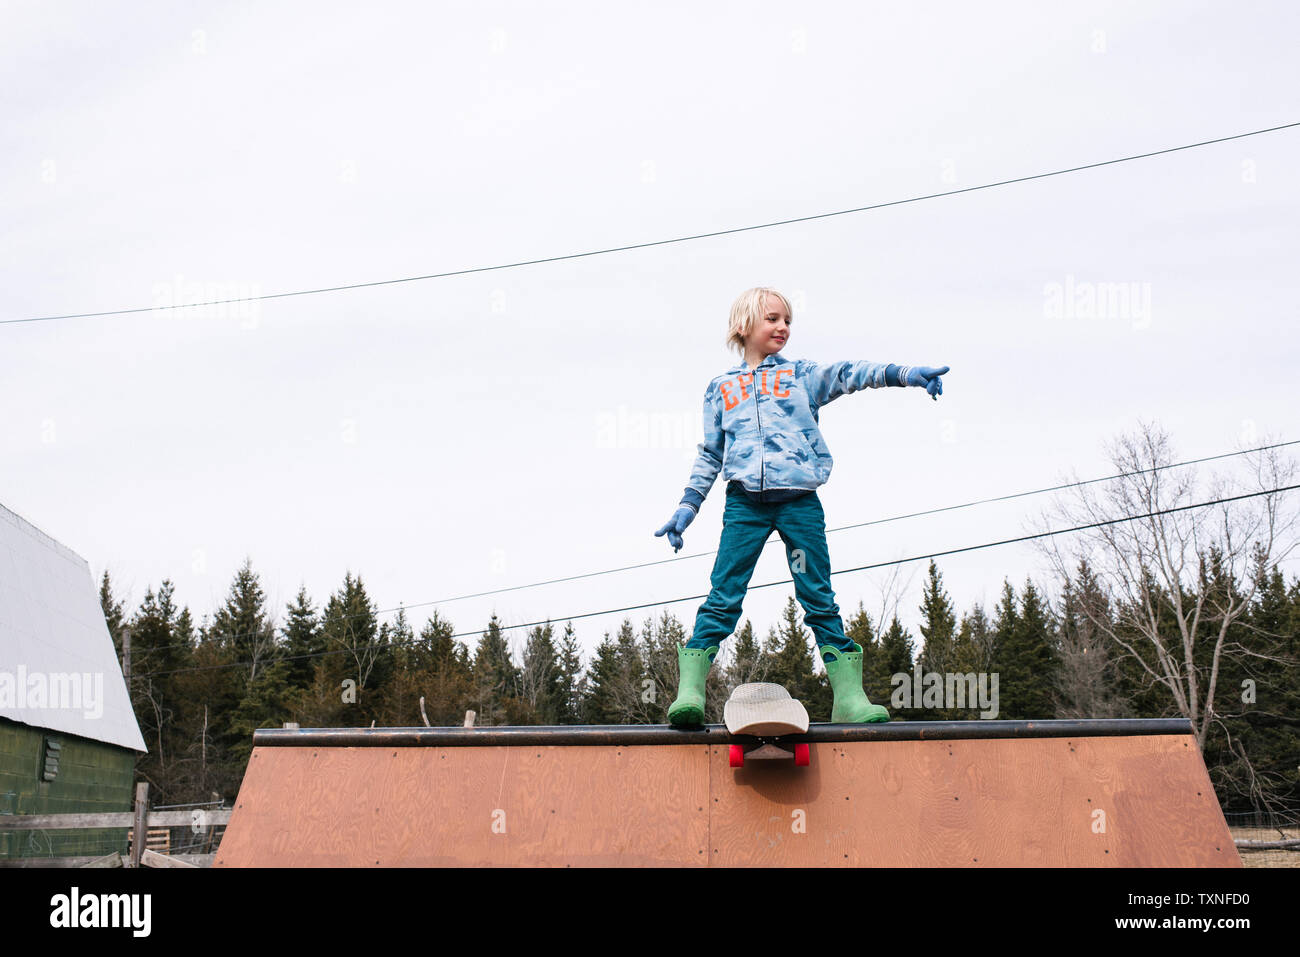 Junge auf dem Skateboard Rampe zeigen Stockfoto